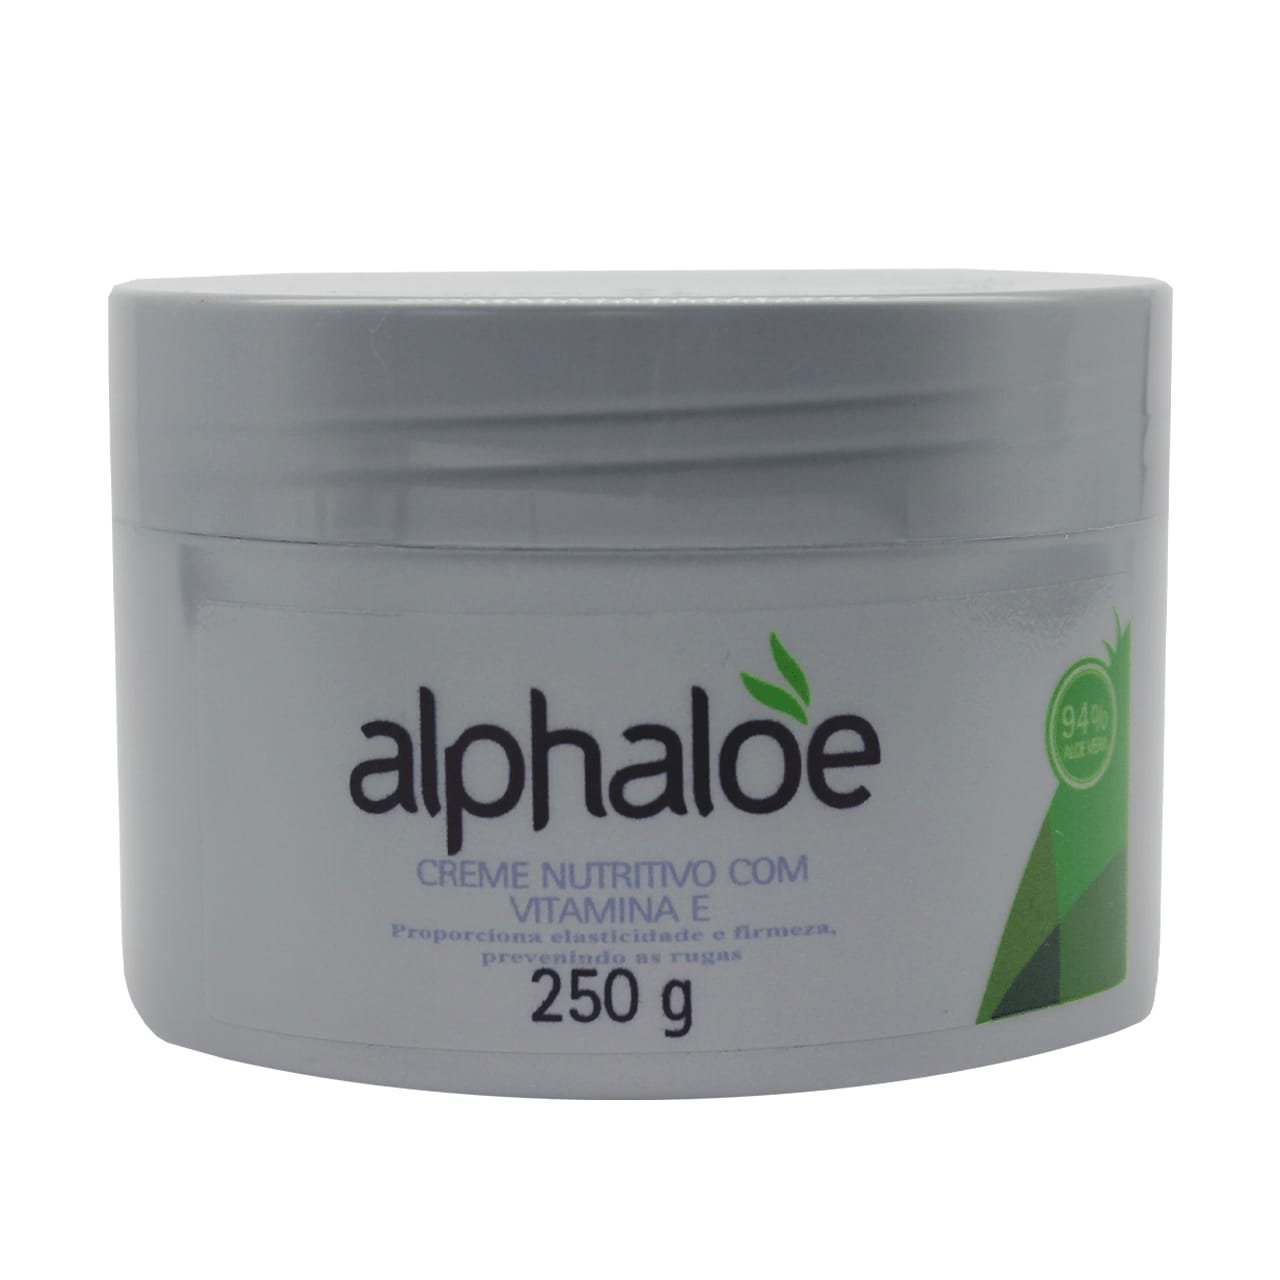 Creme Nutritivo com Vitamina E (94% de Babosa) Alphaloe 250g